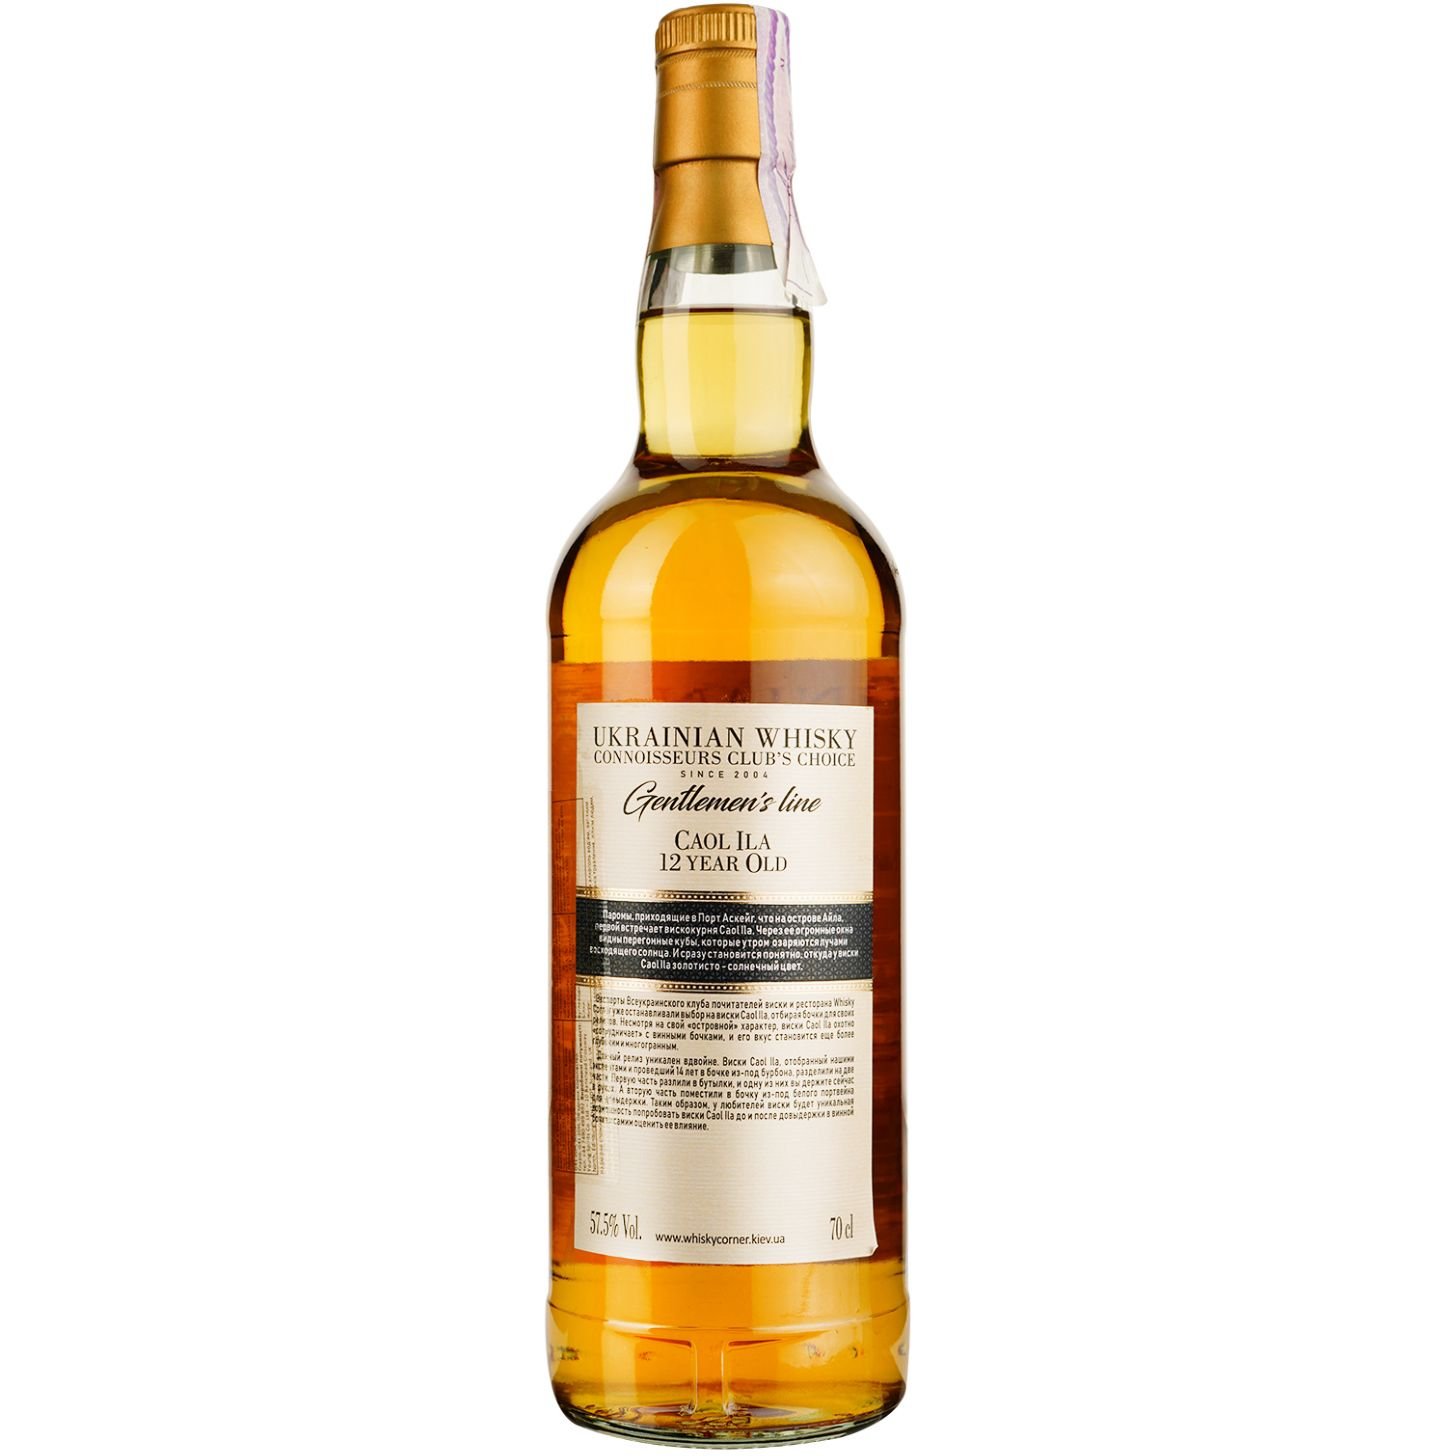 Віскі Caol Ila 12 Years Old Single Malt Scotch Whisky, у подарунковій упаковці, 57,5%, 0,7 л - фото 4